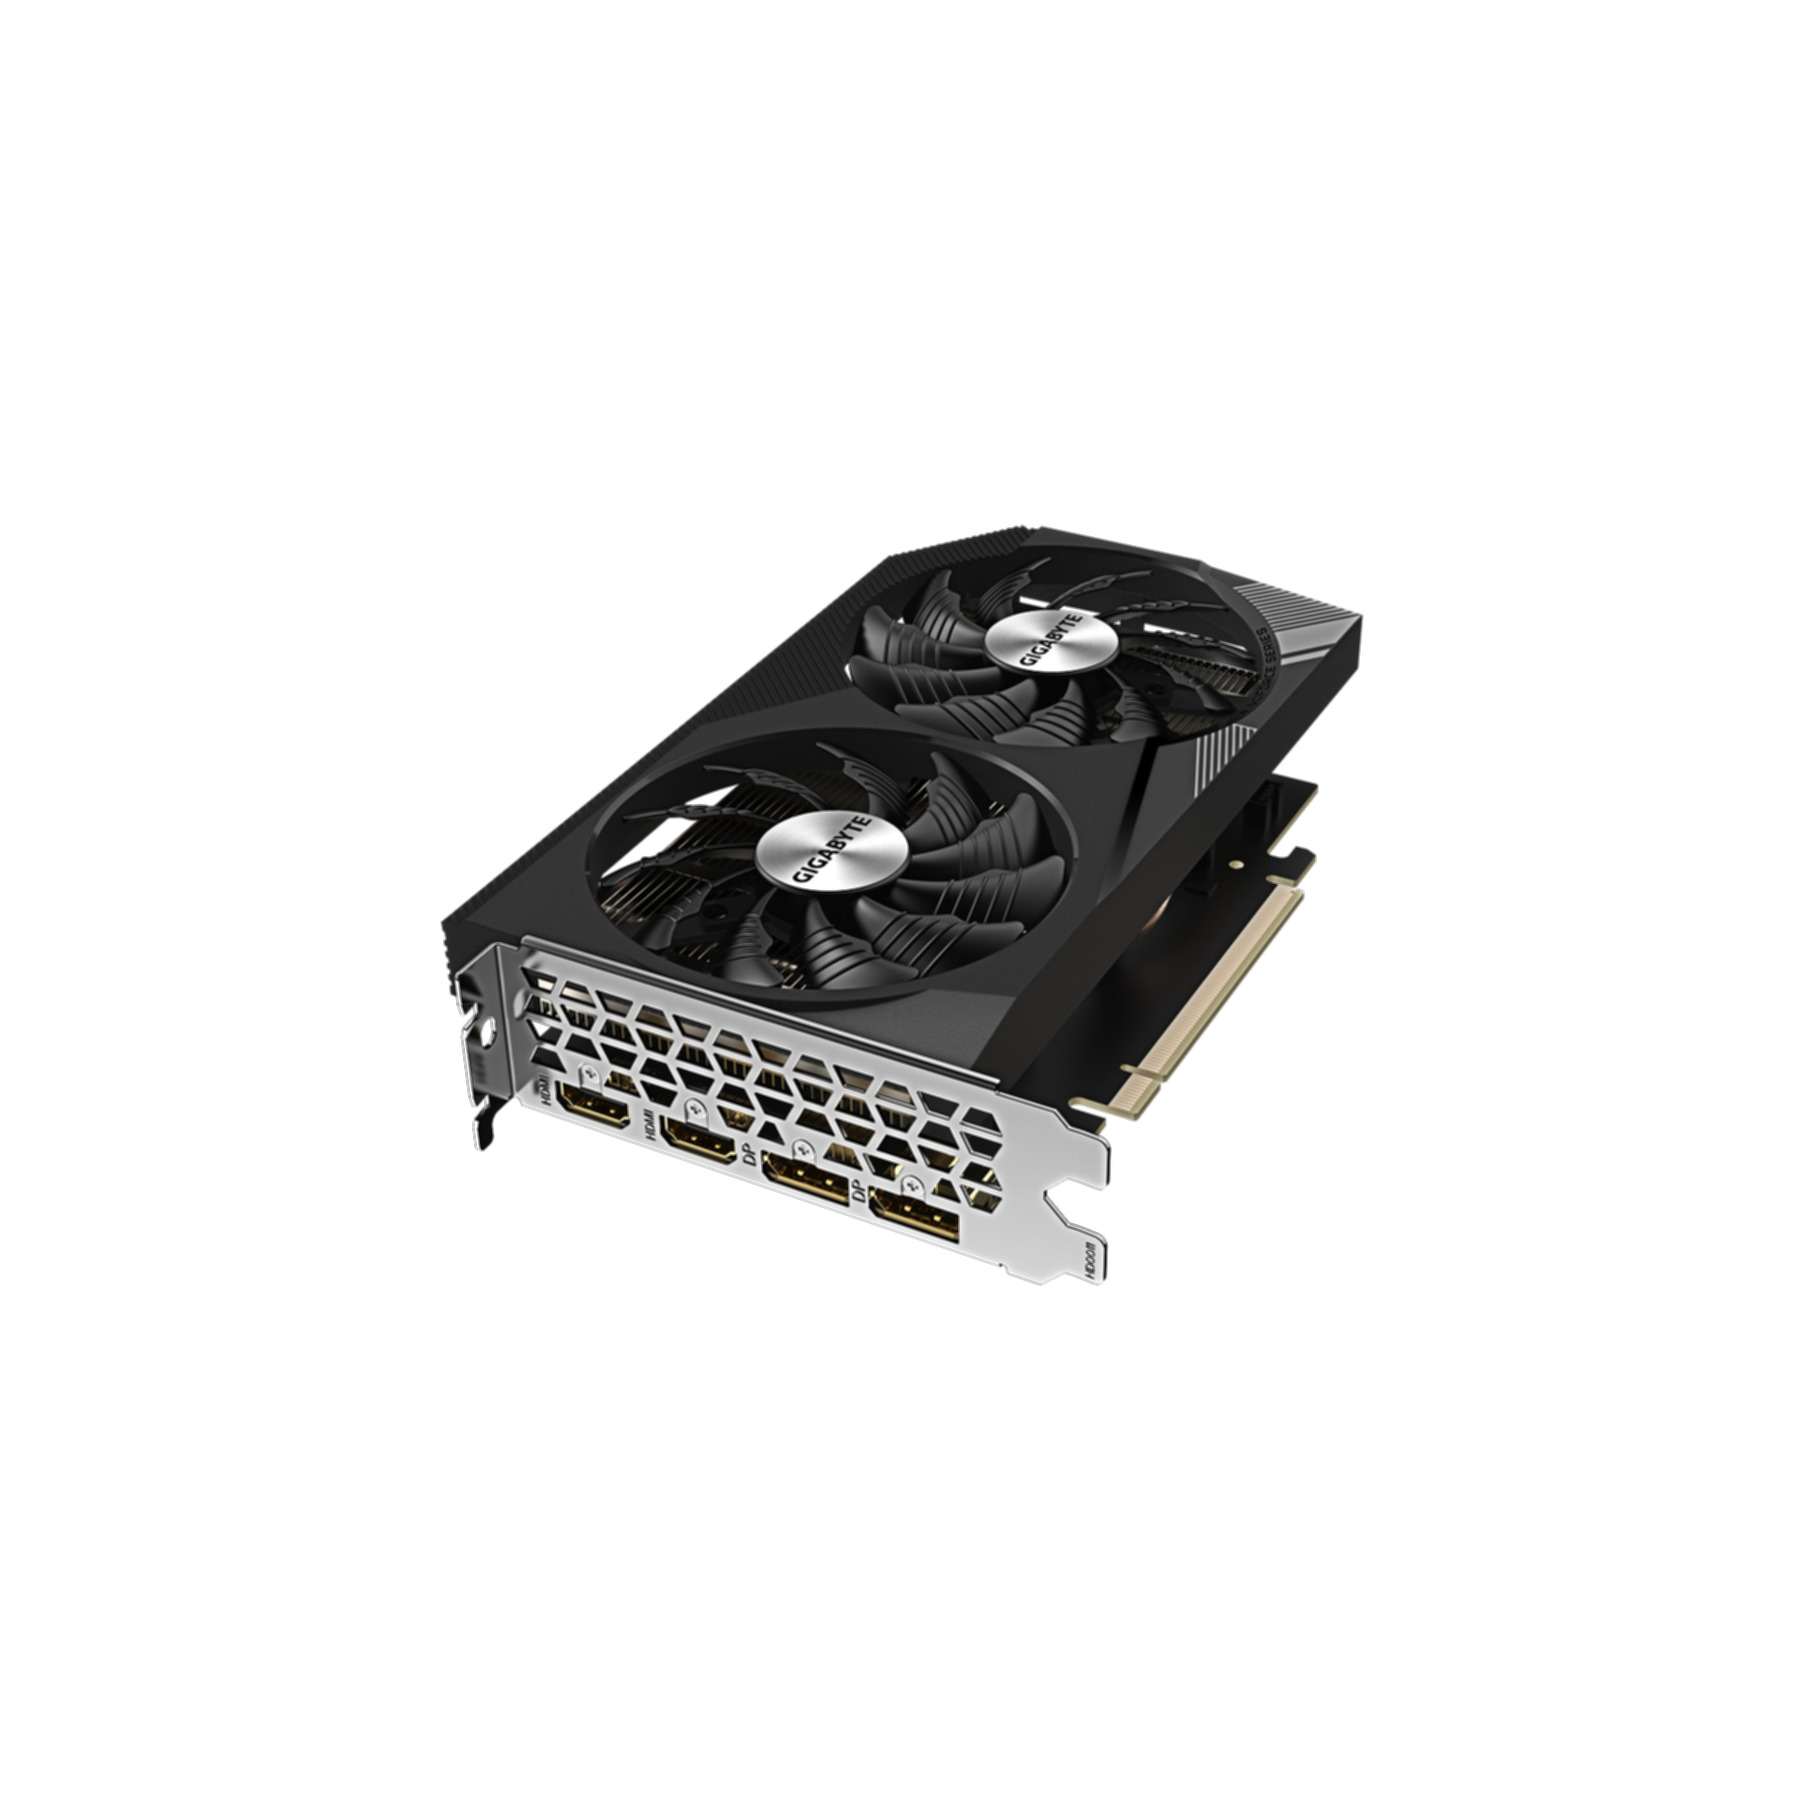 GIGABYTE GeForce RTX V2 3050 8G WINDFORCE (NVIDIA, Grafikkarte) OC